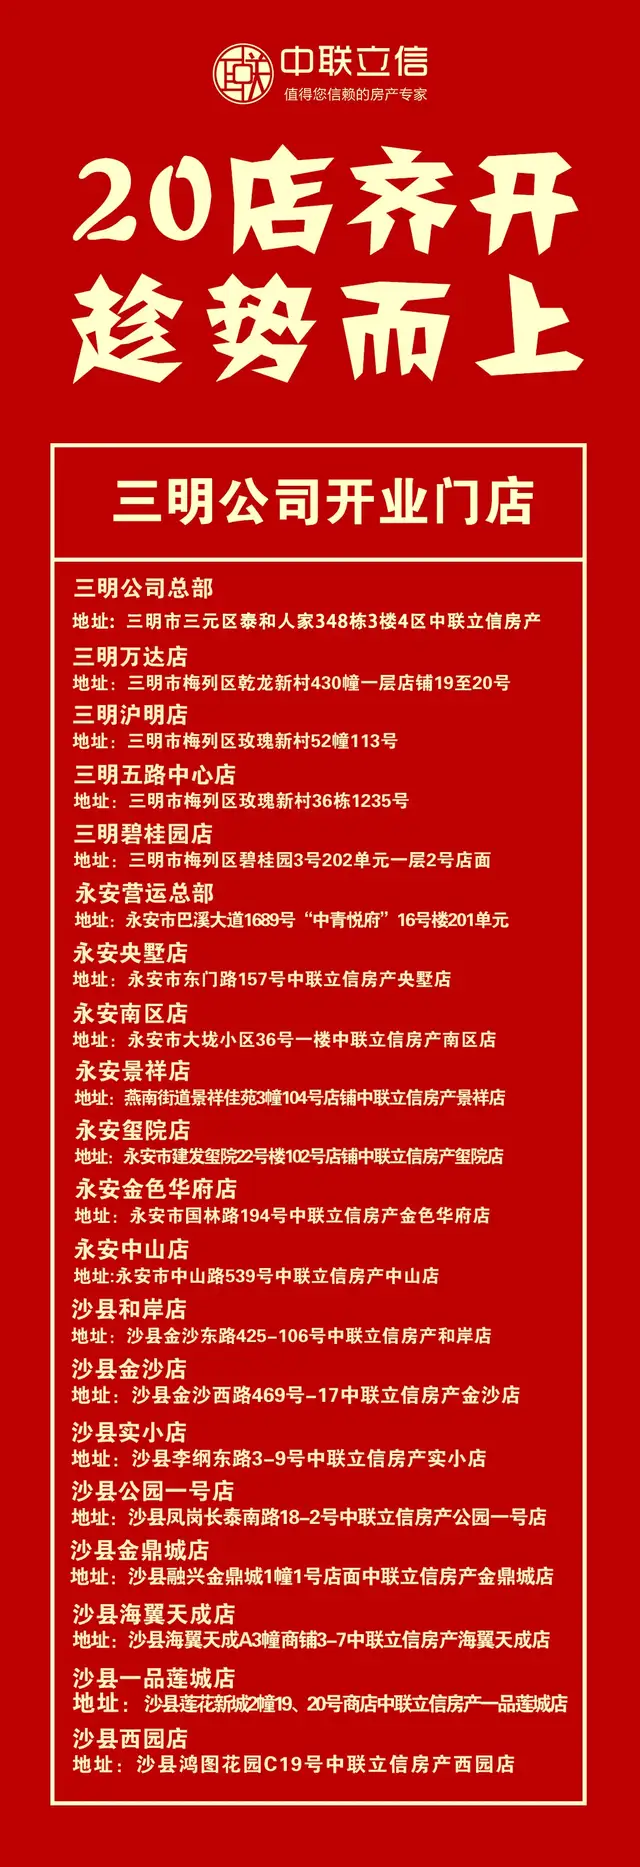 「百花齊放 乘勢而上」中聯立信三明公司總部攜20店盛大開業(圖24)